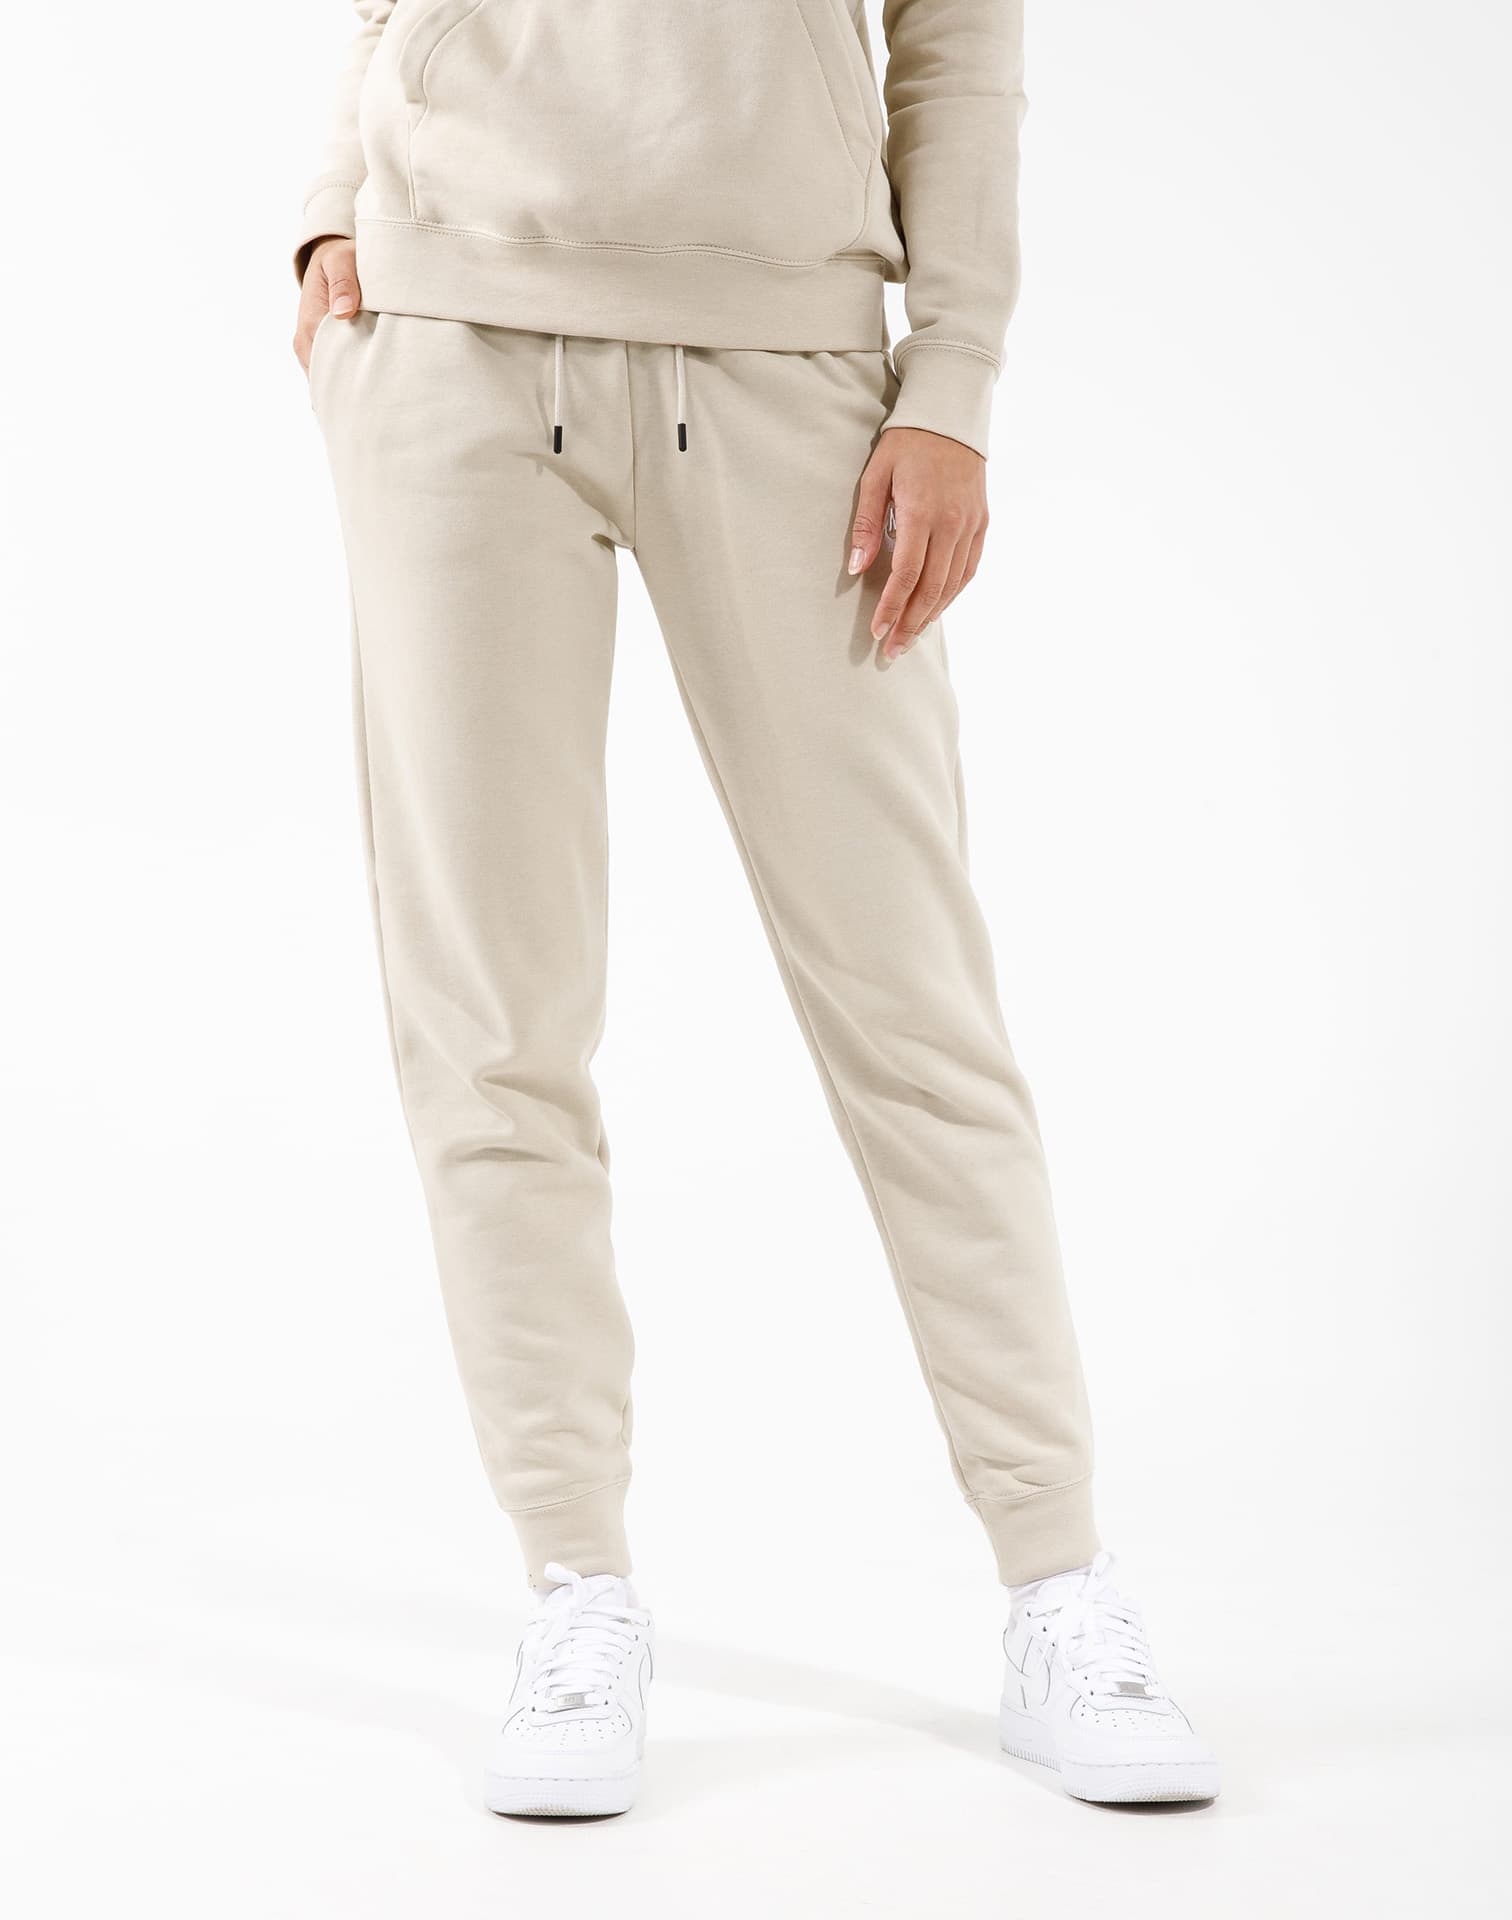 Nike Sportswear Essential Women's Fleece Pants BV4095-010